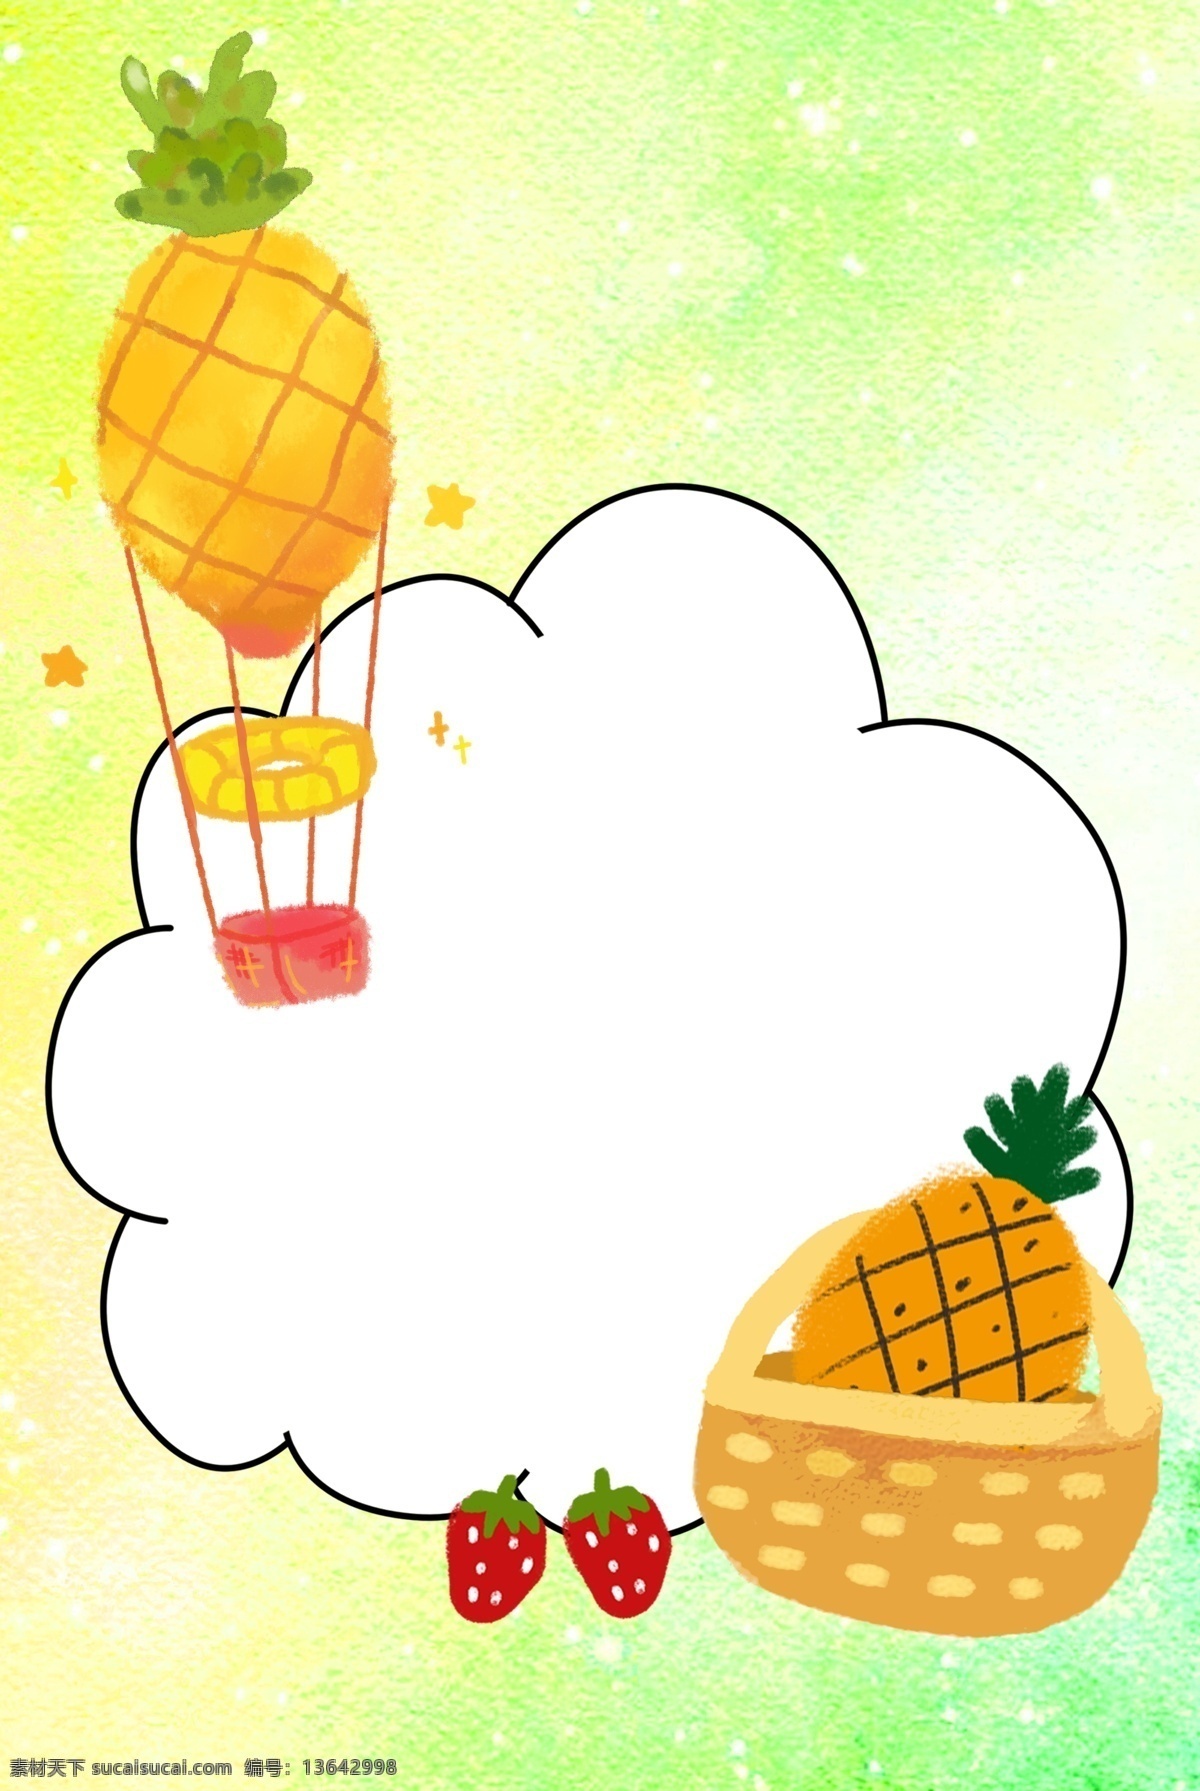 菠萝 唯美 边框 背景 水果 当季水果 凤梨 台湾凤梨 美食 菠萝背景 美味